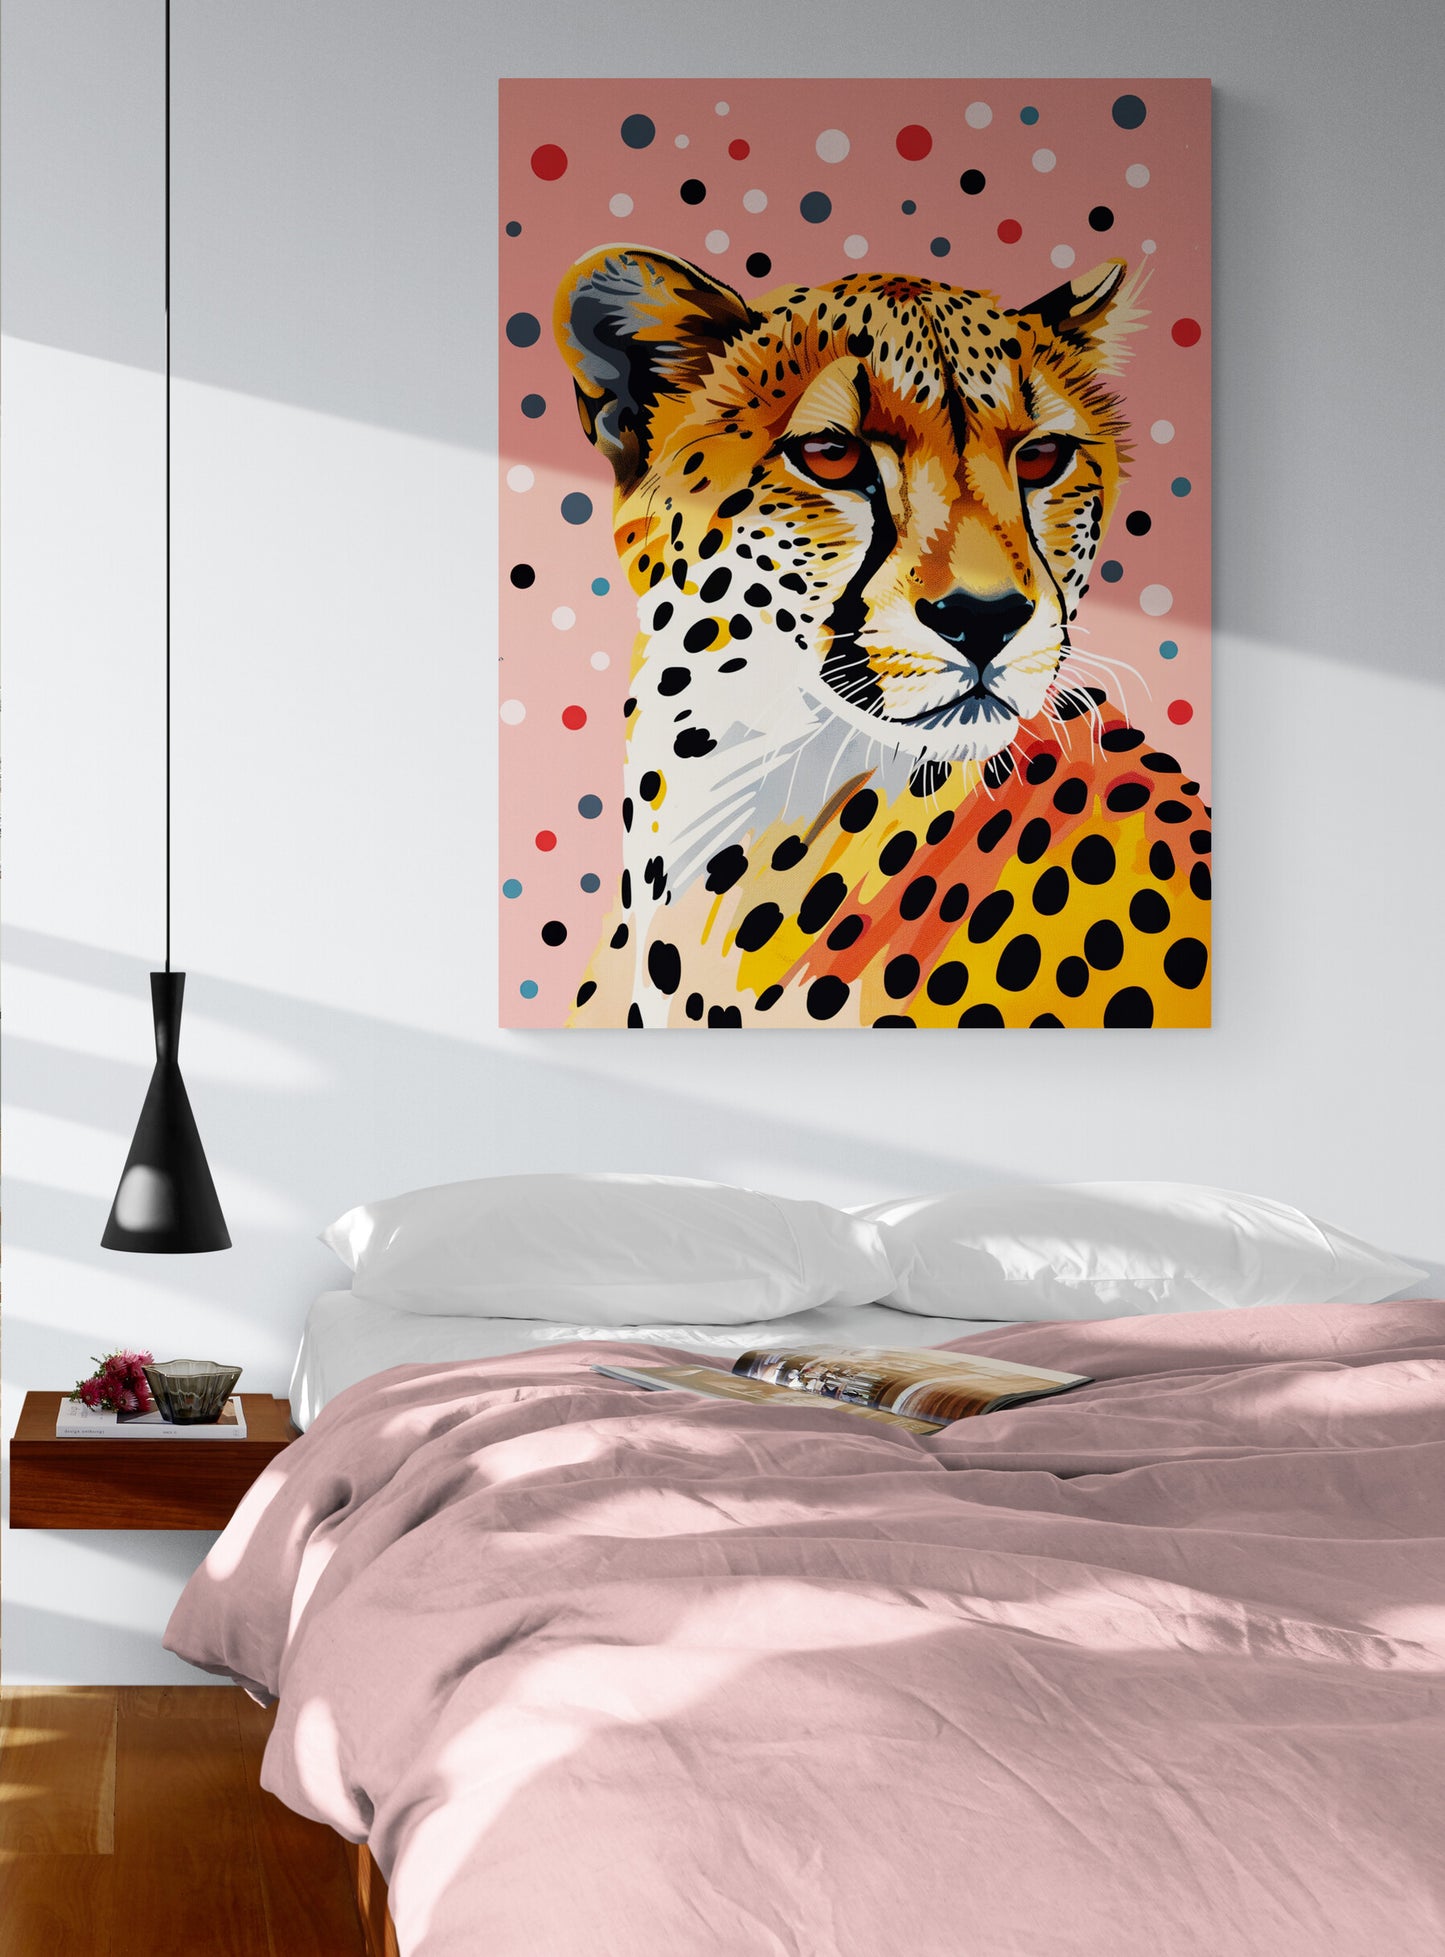 chambre parentale, grand lit double draps roses, table de chevet mural, lampe en suspension, mur blanc, affiche animal sauvage.